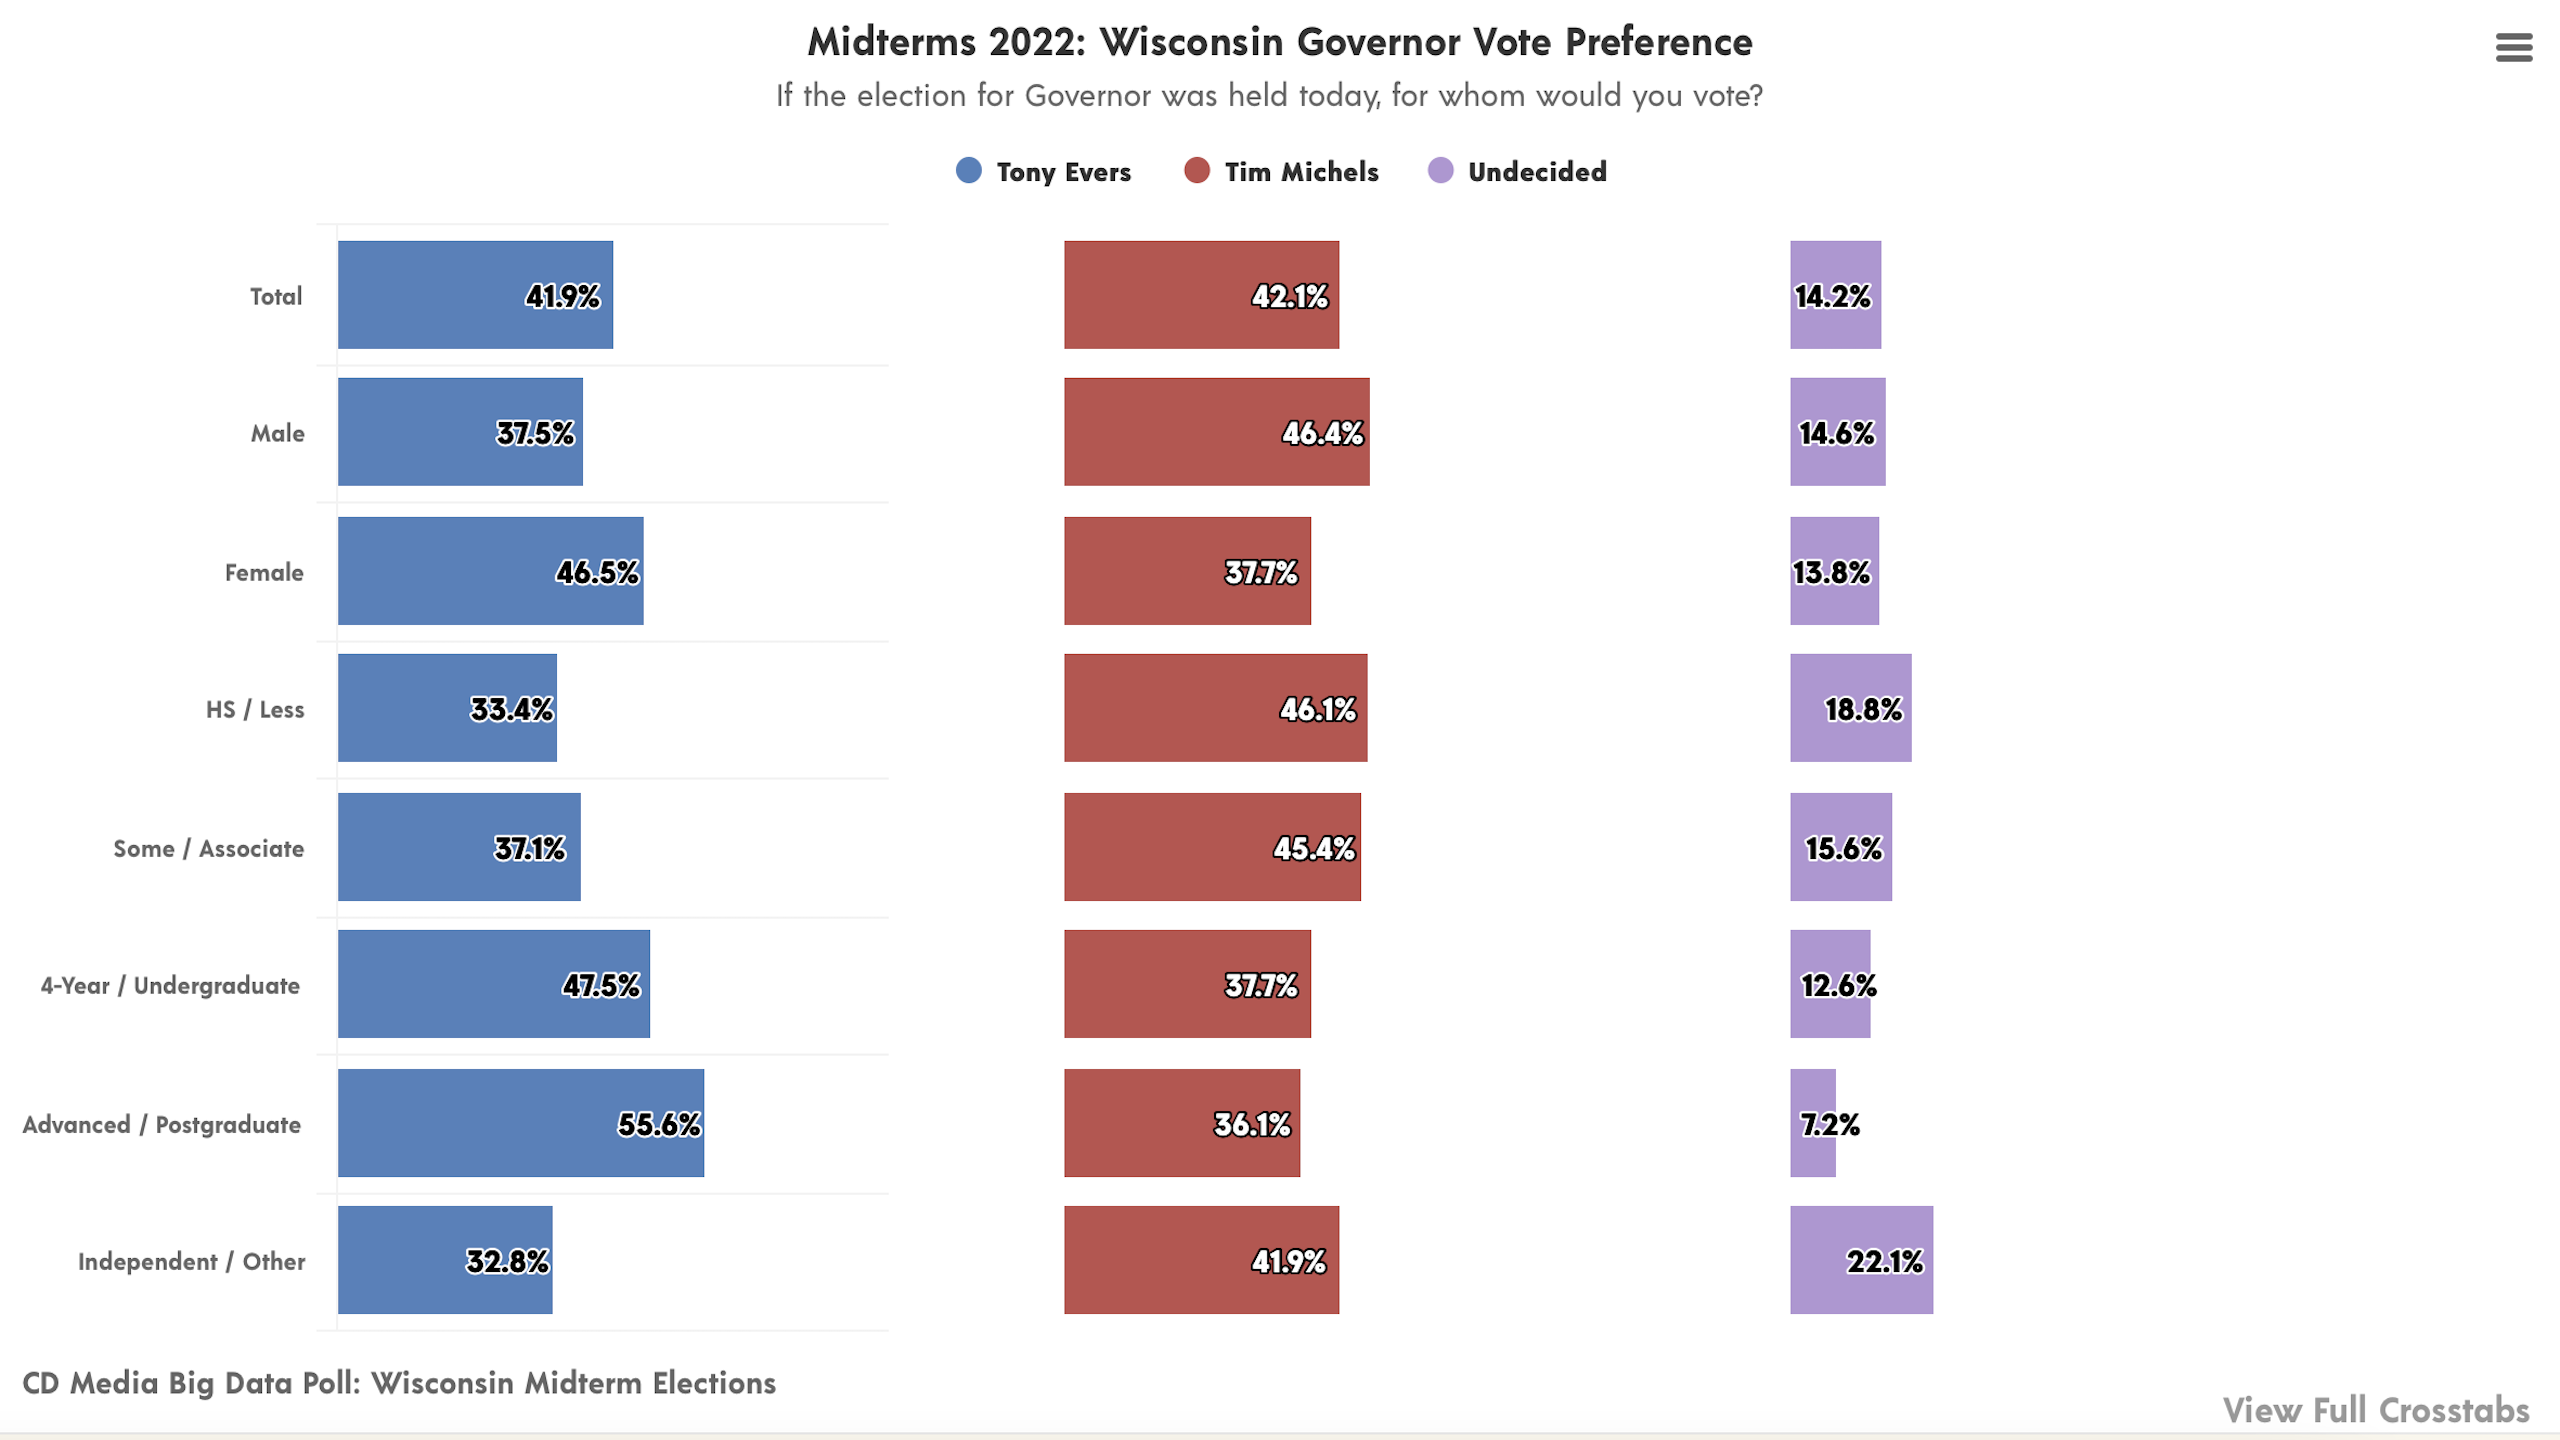 CD Media Big Data Poll Wisconsin Governor Vote Preference